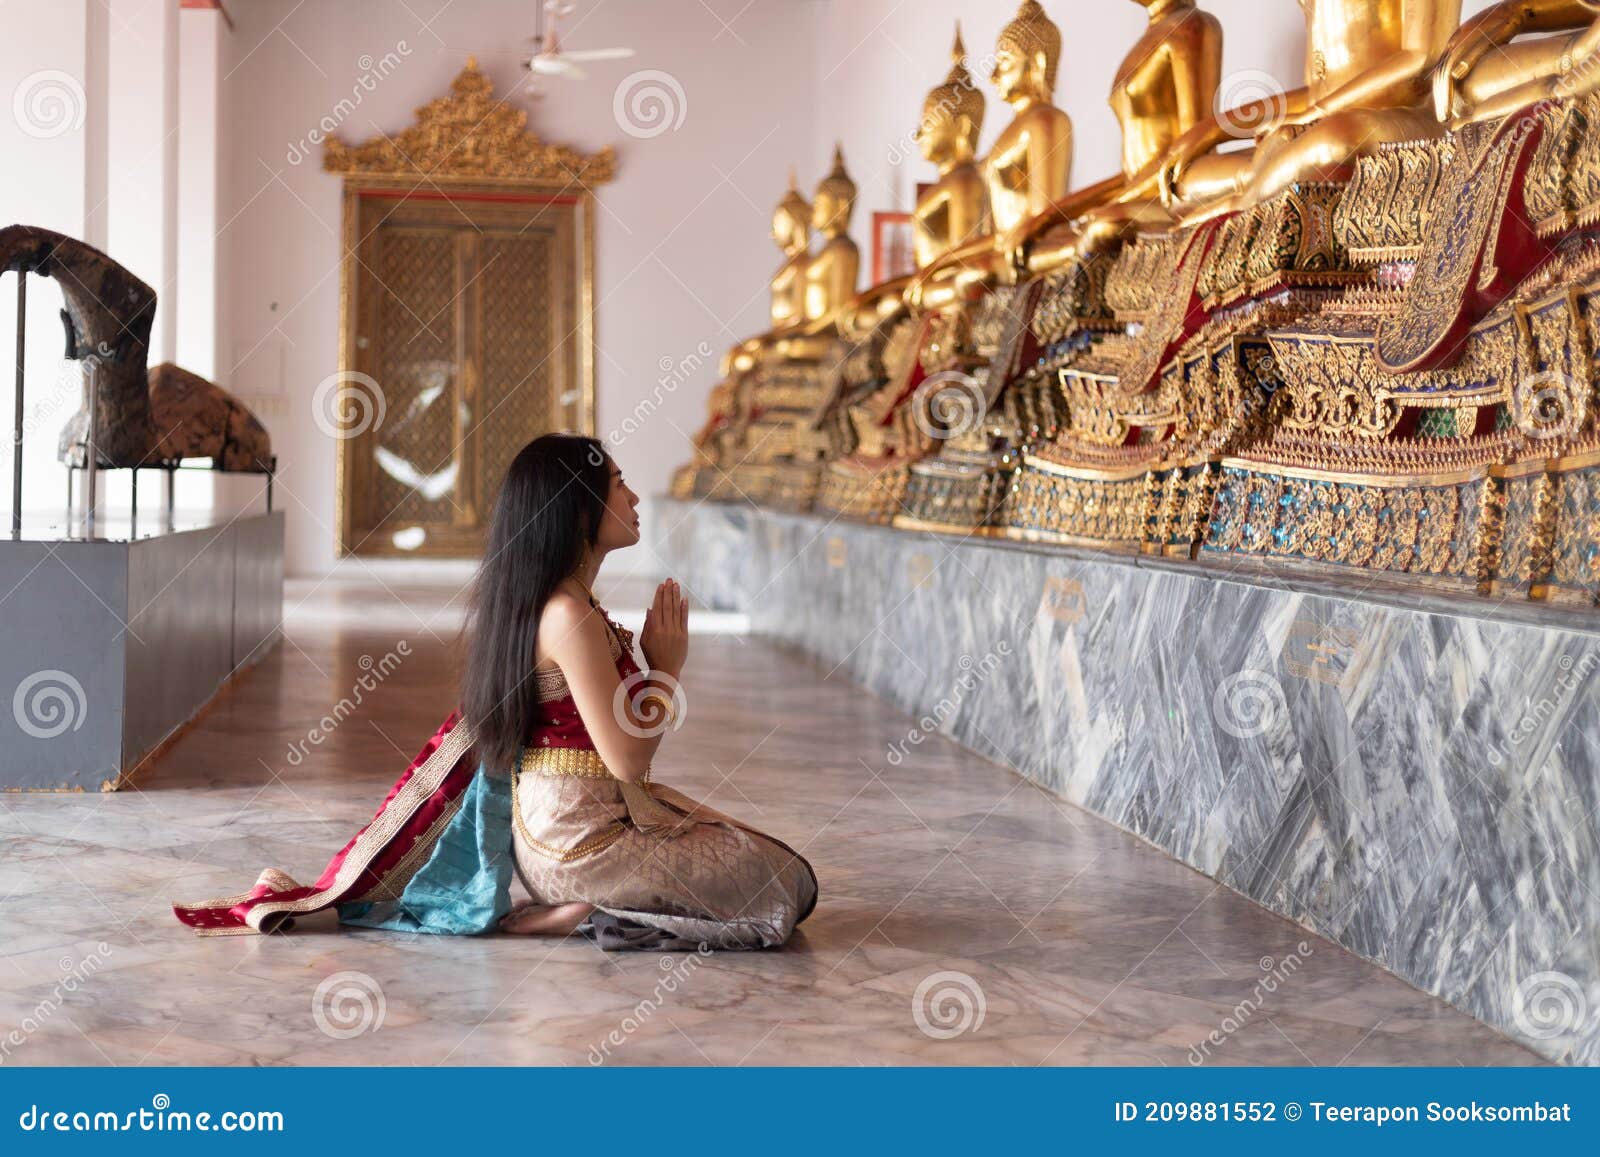 Bella Mujer Con Traje De Vestir Tradicional Foto archivo - Imagen de belleza, tailandia: